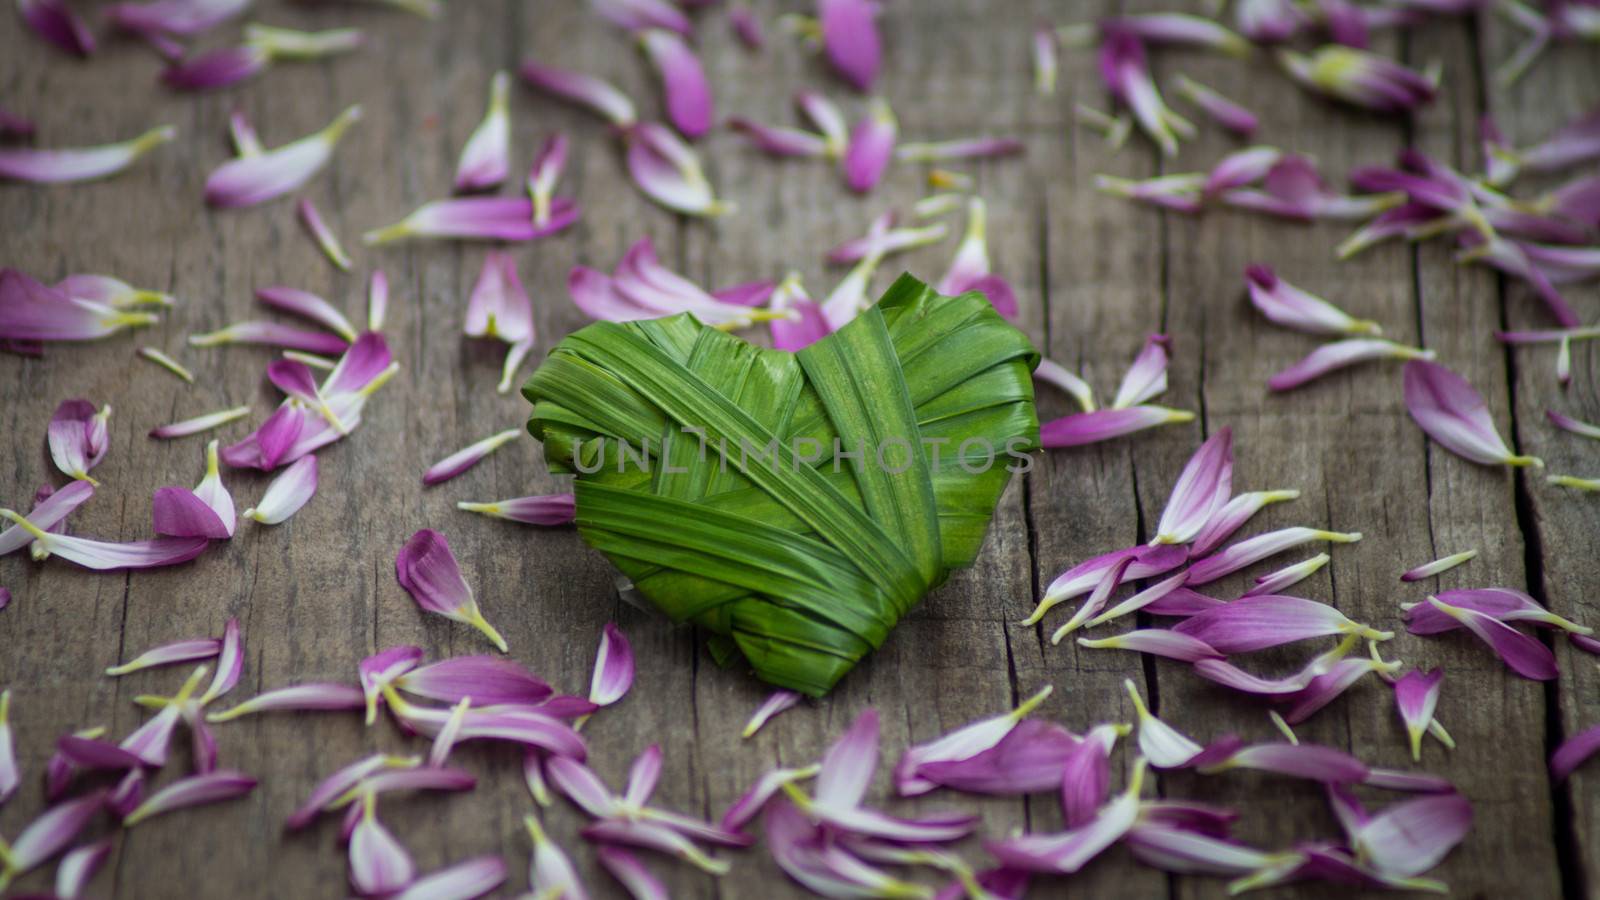 Palm Leaf heart by kbuntu